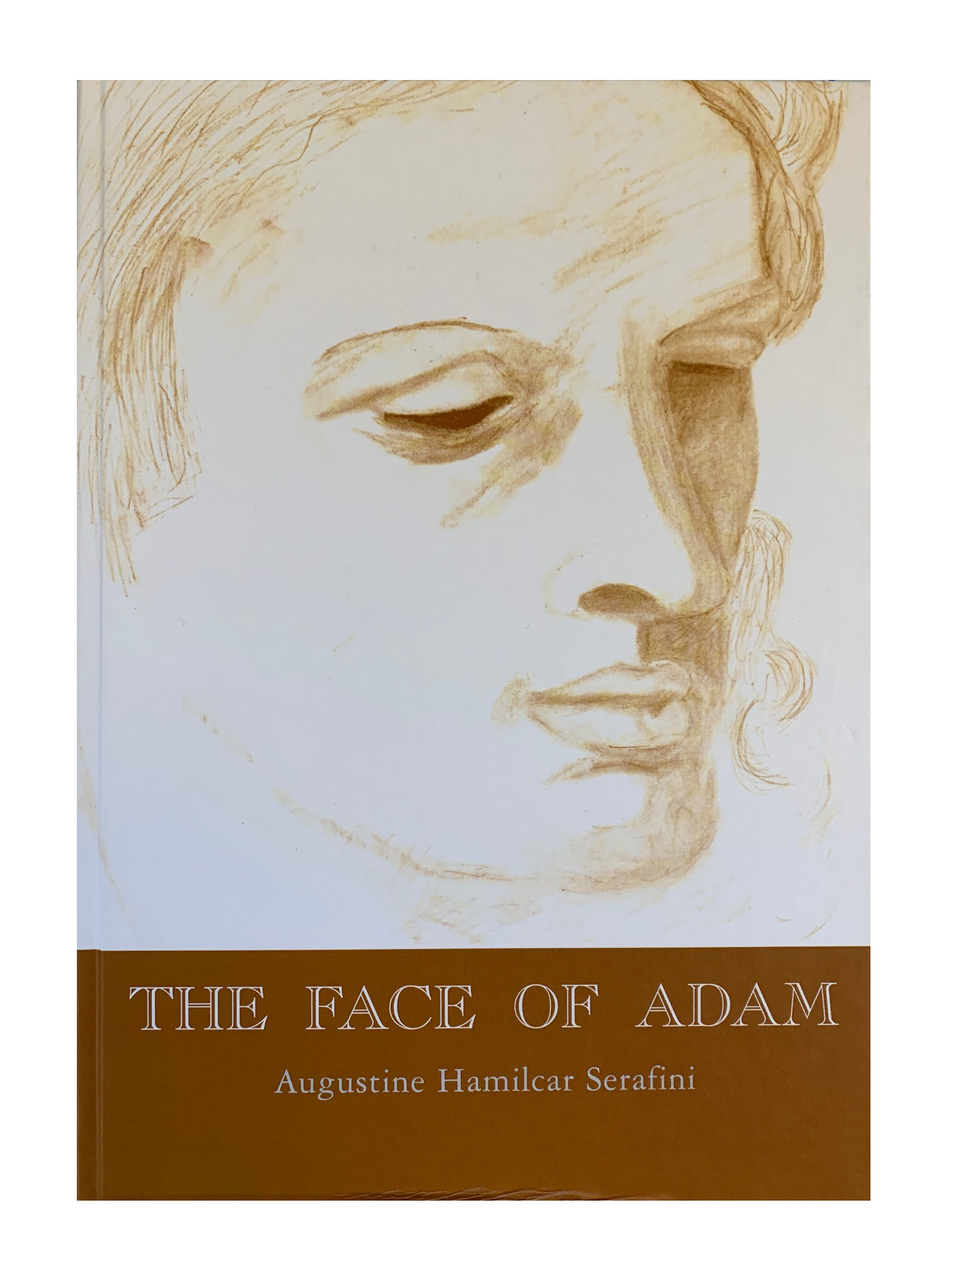 The face of adam